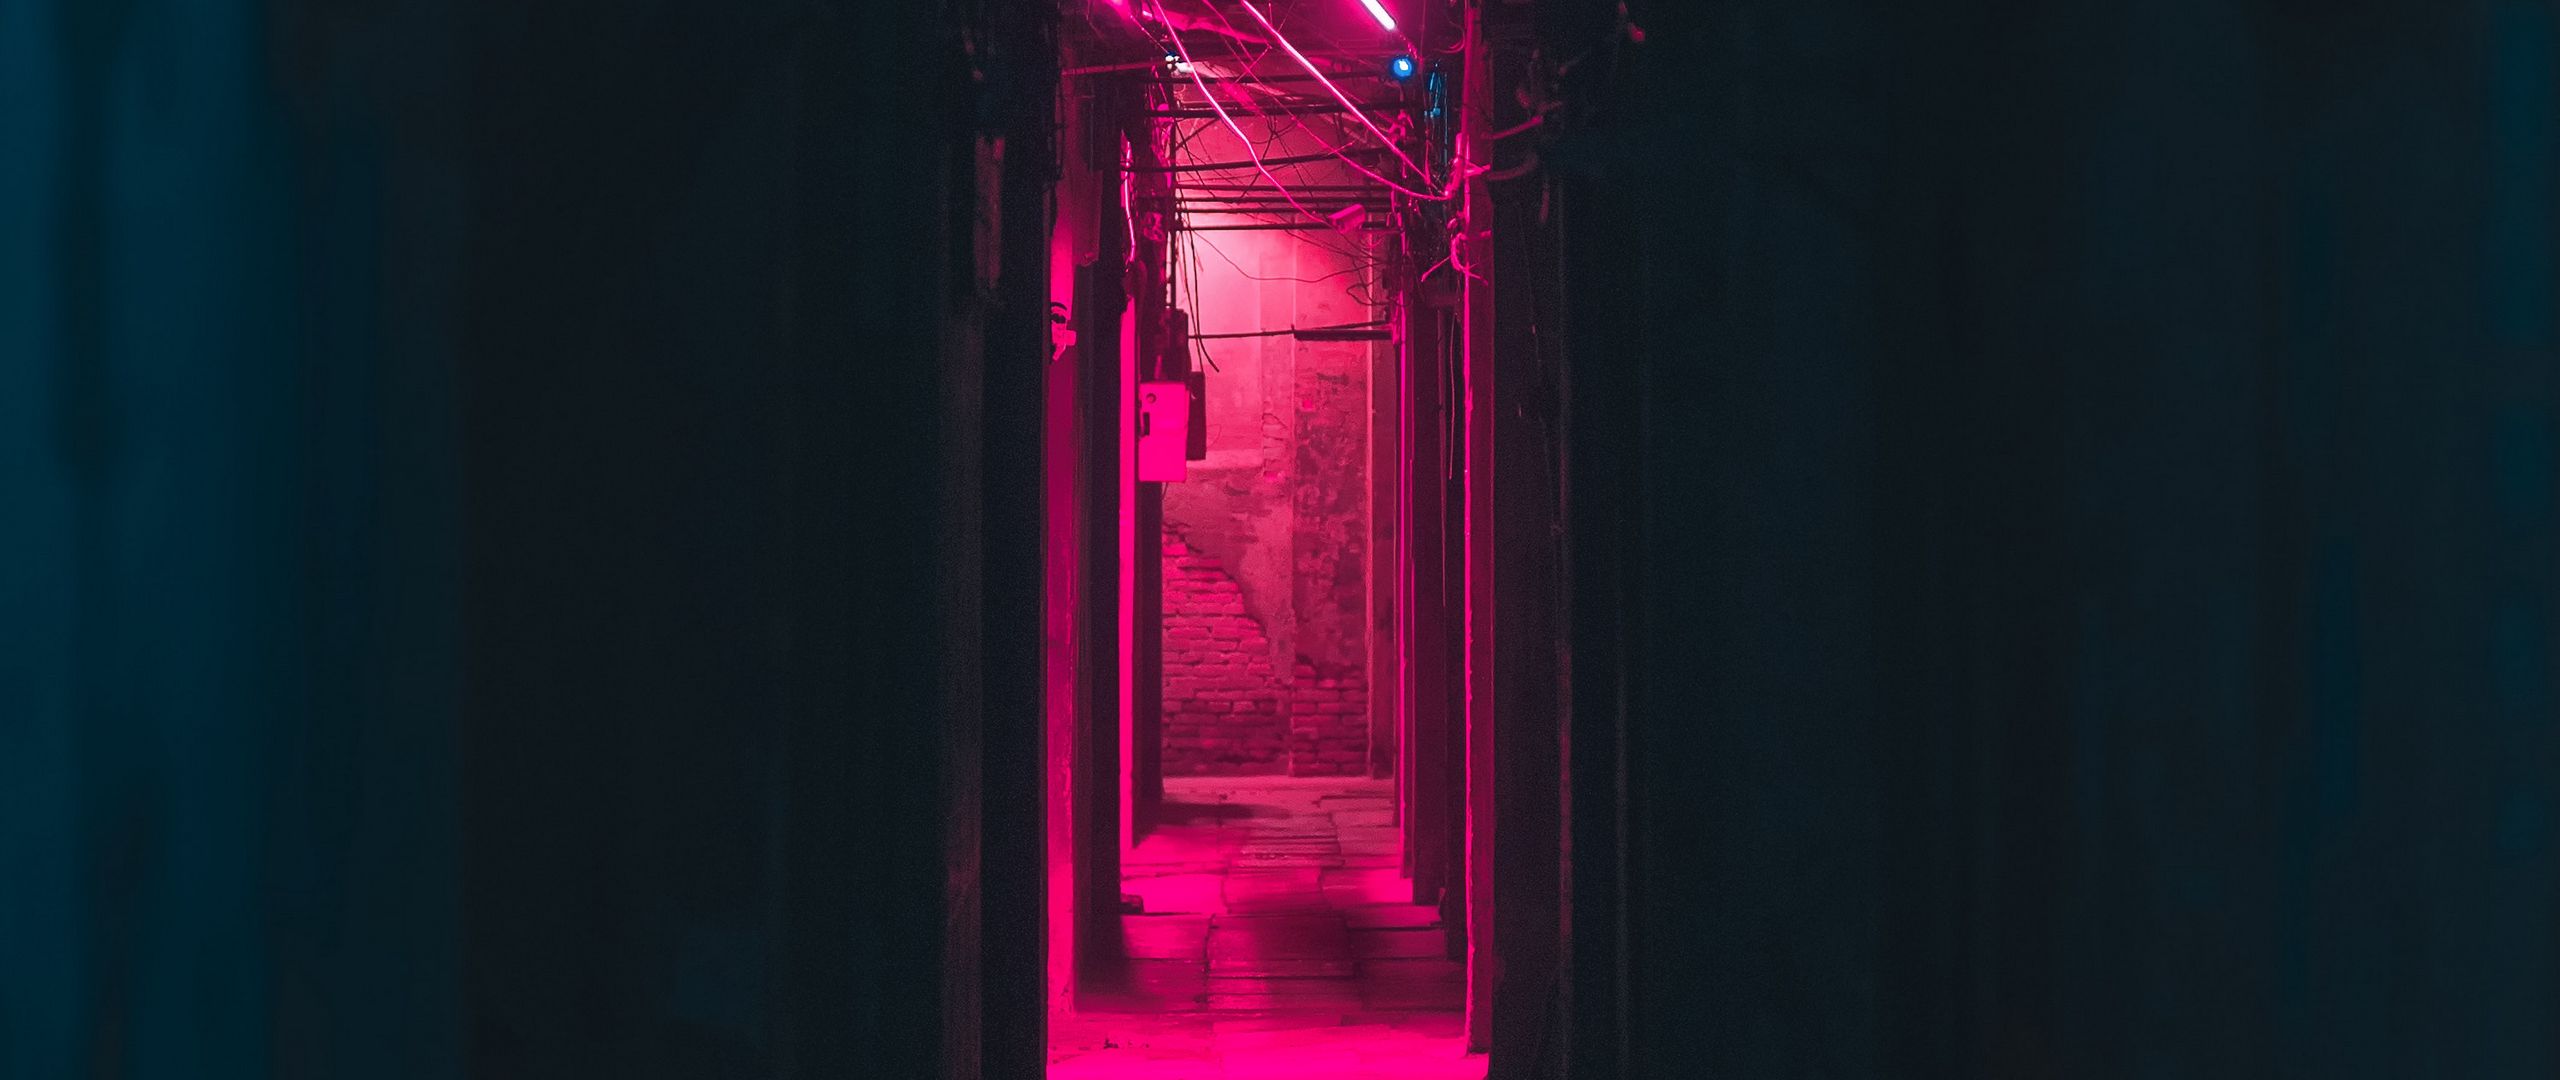 Hình nền hồng neon đen sẽ mang đến cho bạn một không gian làm việc hay giải trí hiện đại và độc đáo. Hãy cùng chiêm ngưỡng thiết kế này để có những trải nghiệm thú vị.